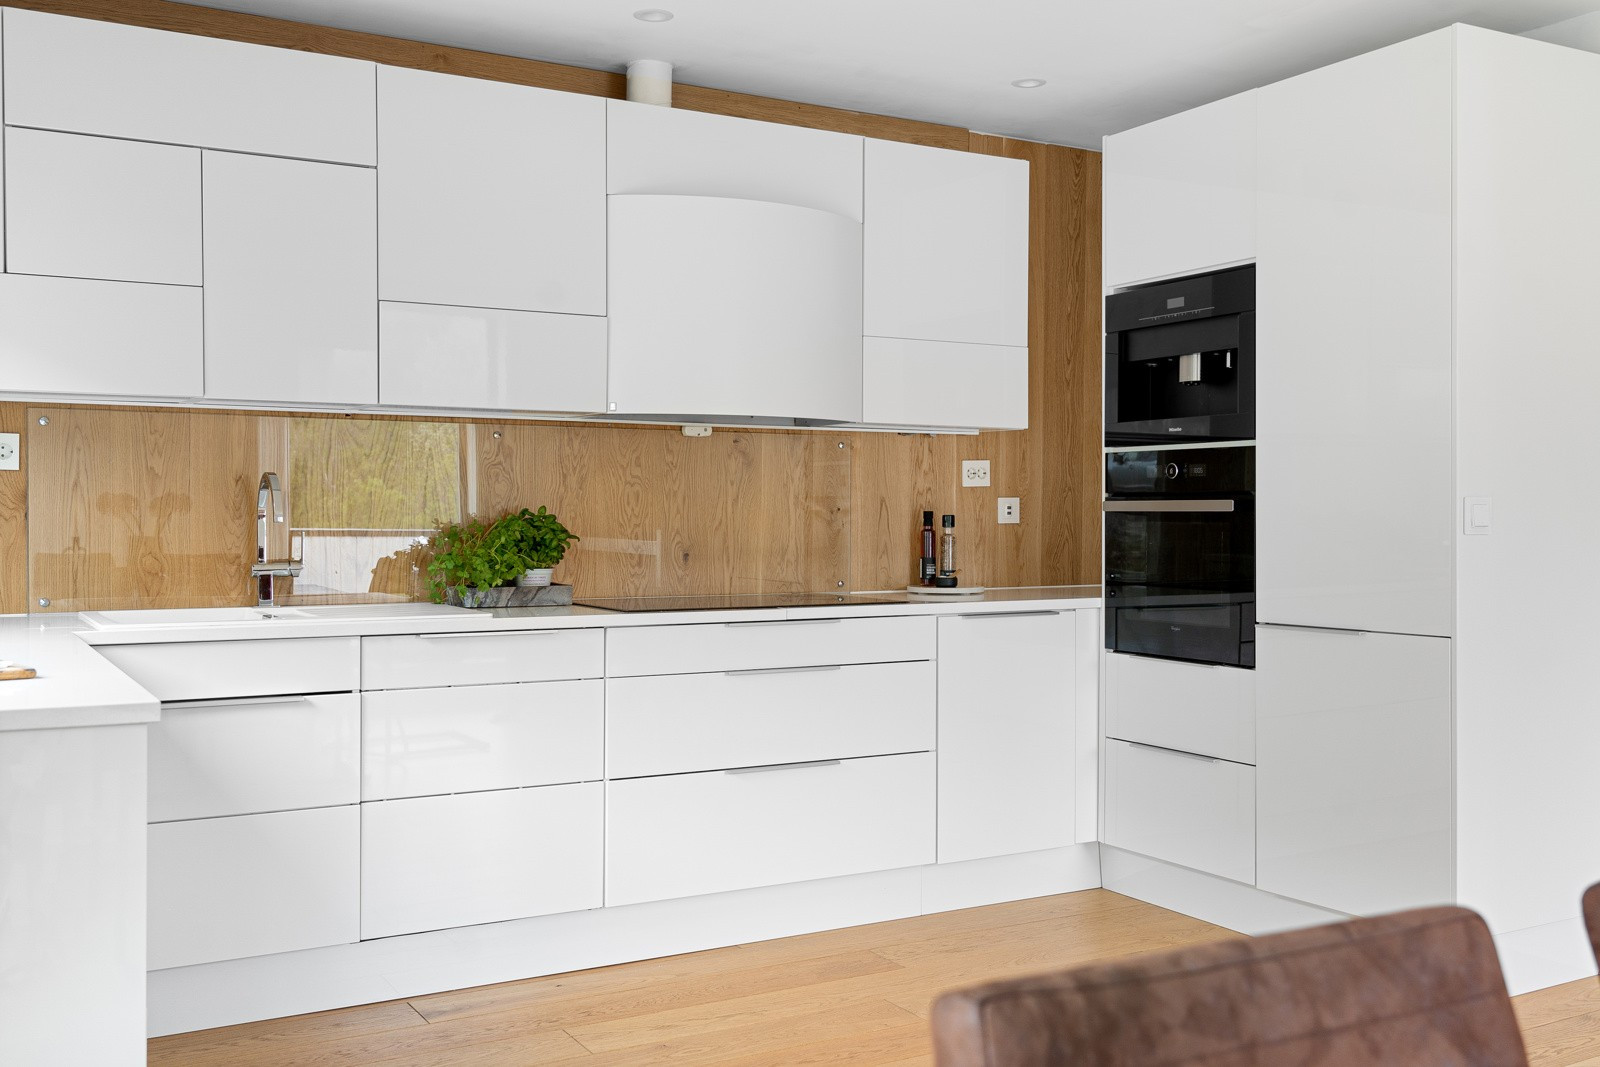 Kjøkkenet har kvaliteter som integrert kjøl/frys, stekeovn, koketopp, kaffemaskin og oppvaskmaskin.